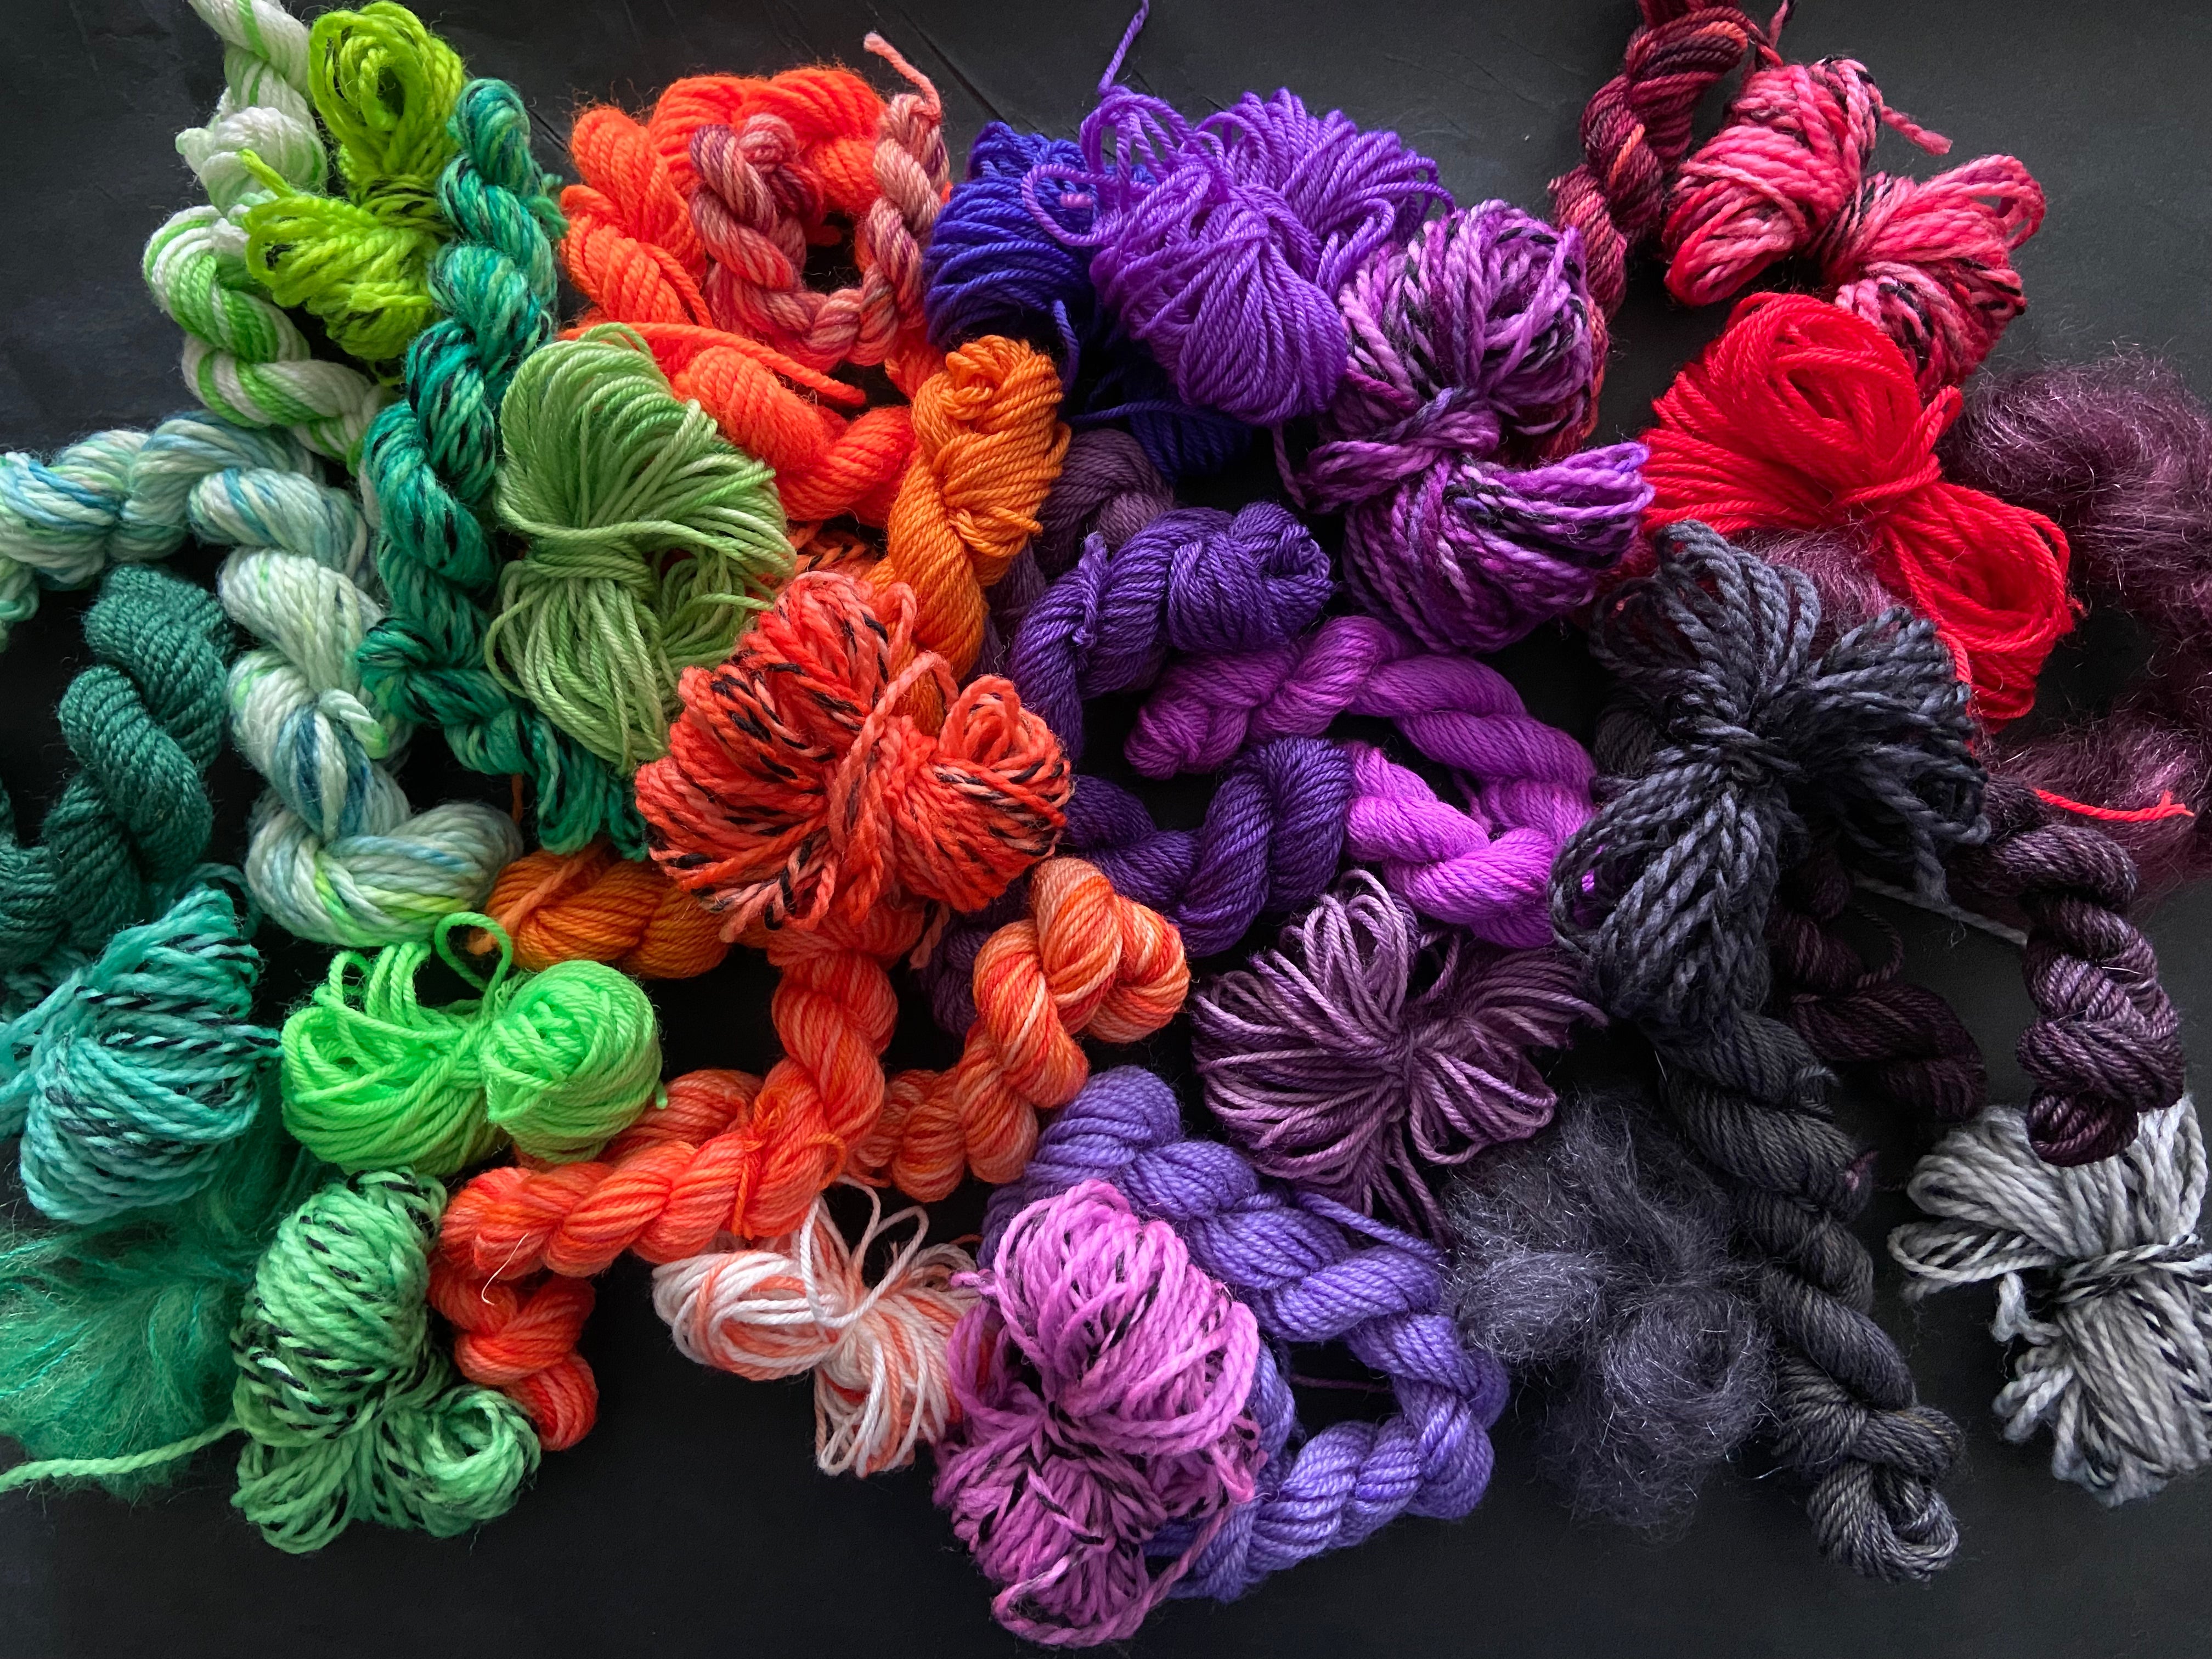 Undyed wool sock yarn 75% wool 25% nylon - The Yarn Gallery